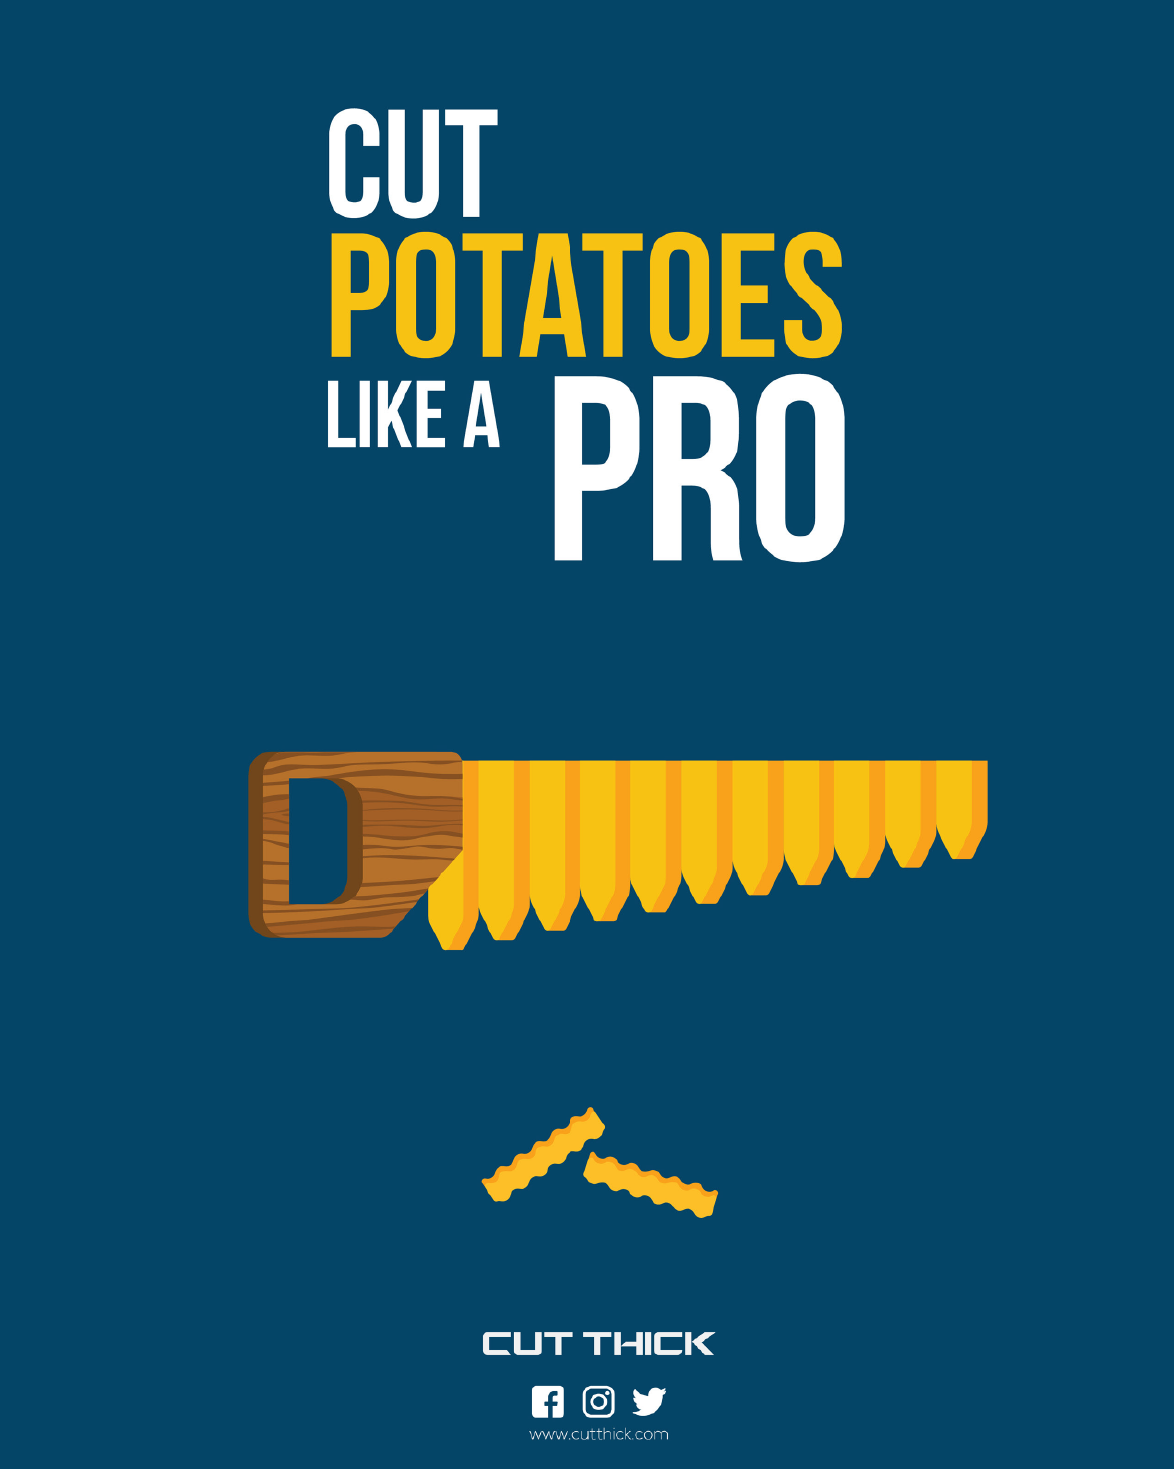 poster about cut potatoes like a pro